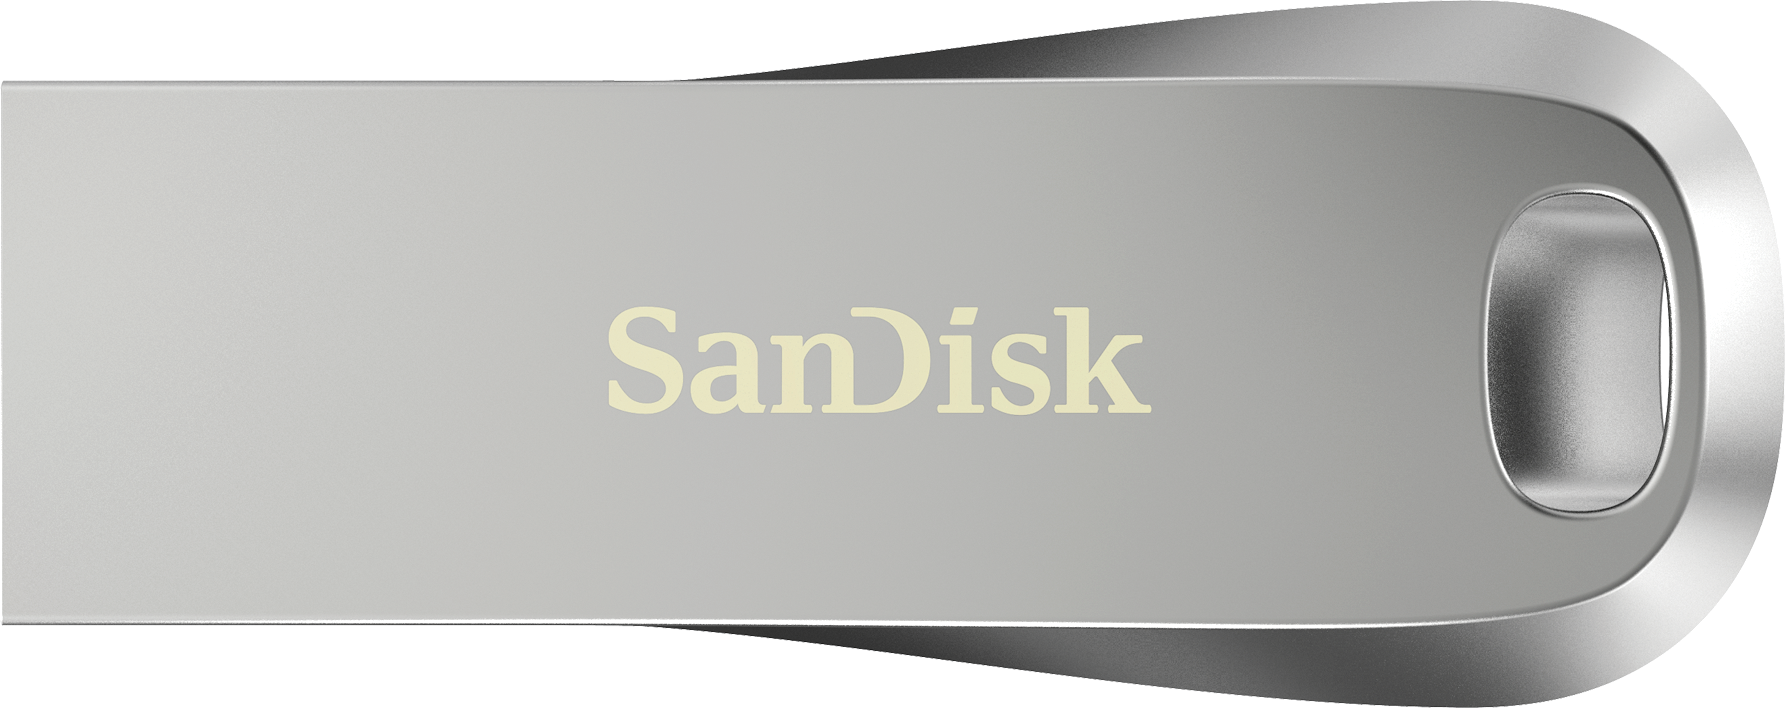 Sandisk secure access v3 download